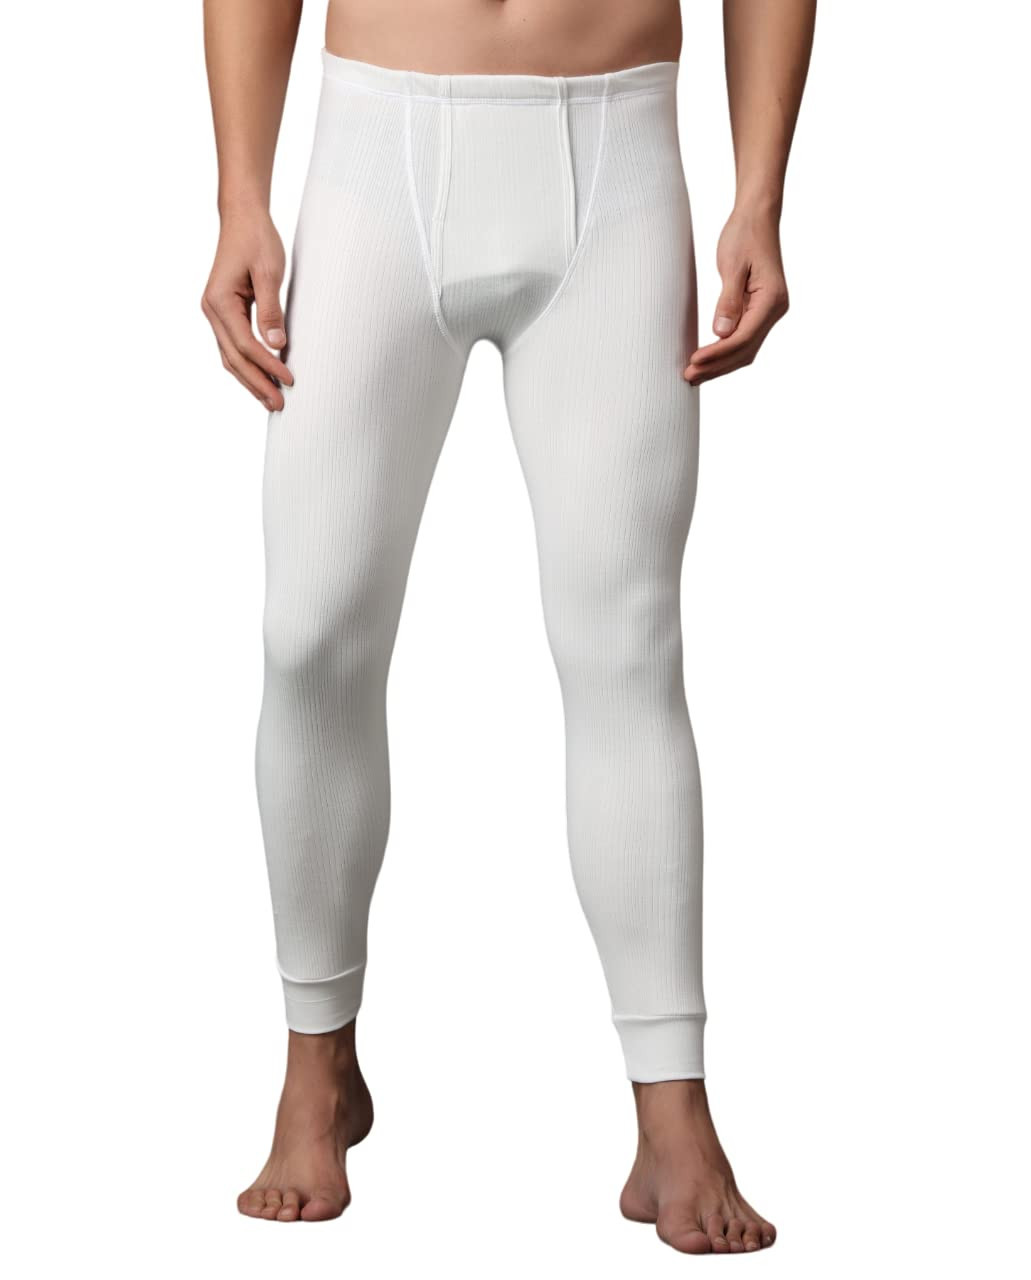 https://www.zebrs.com/uploads/zebrs/products/wearslim-premium-winter-thermal-bottom-underwear-for-men--ultra-soft-winter-warmer-inner-wear-johns-pant-lower-whitesize-2xl-175852821433208_l.jpg